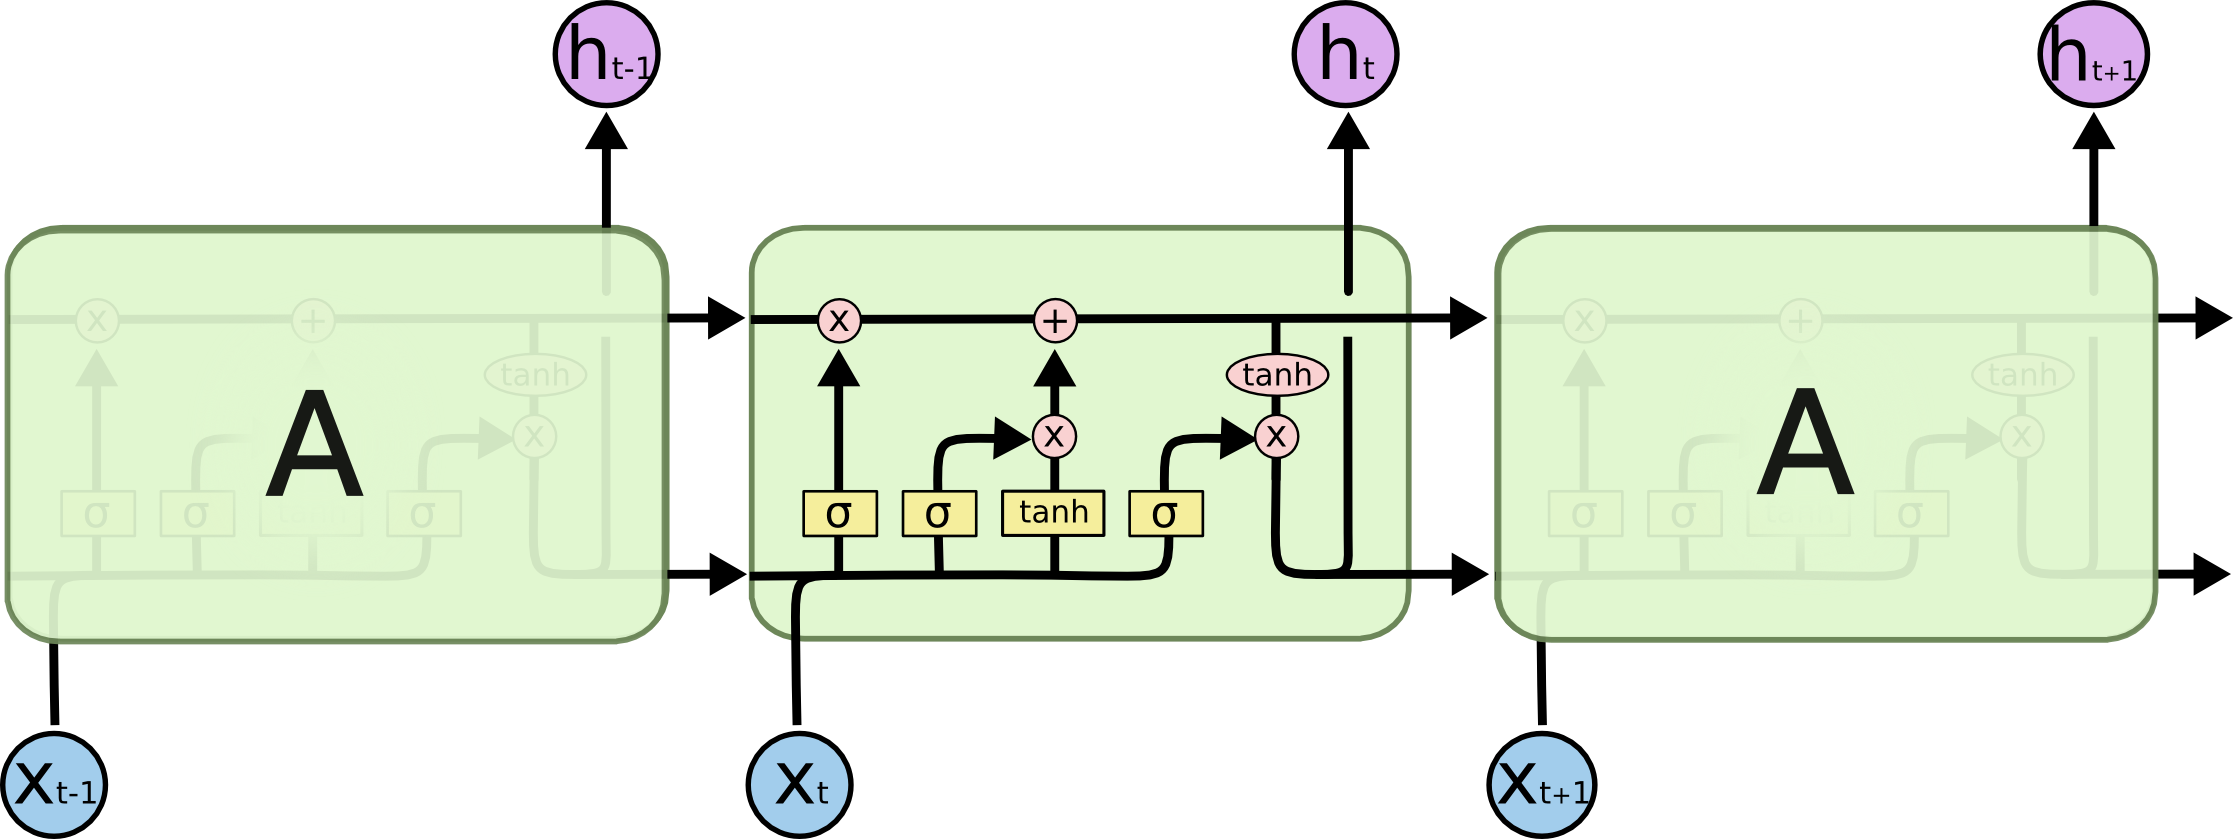 典型LSTM网络图